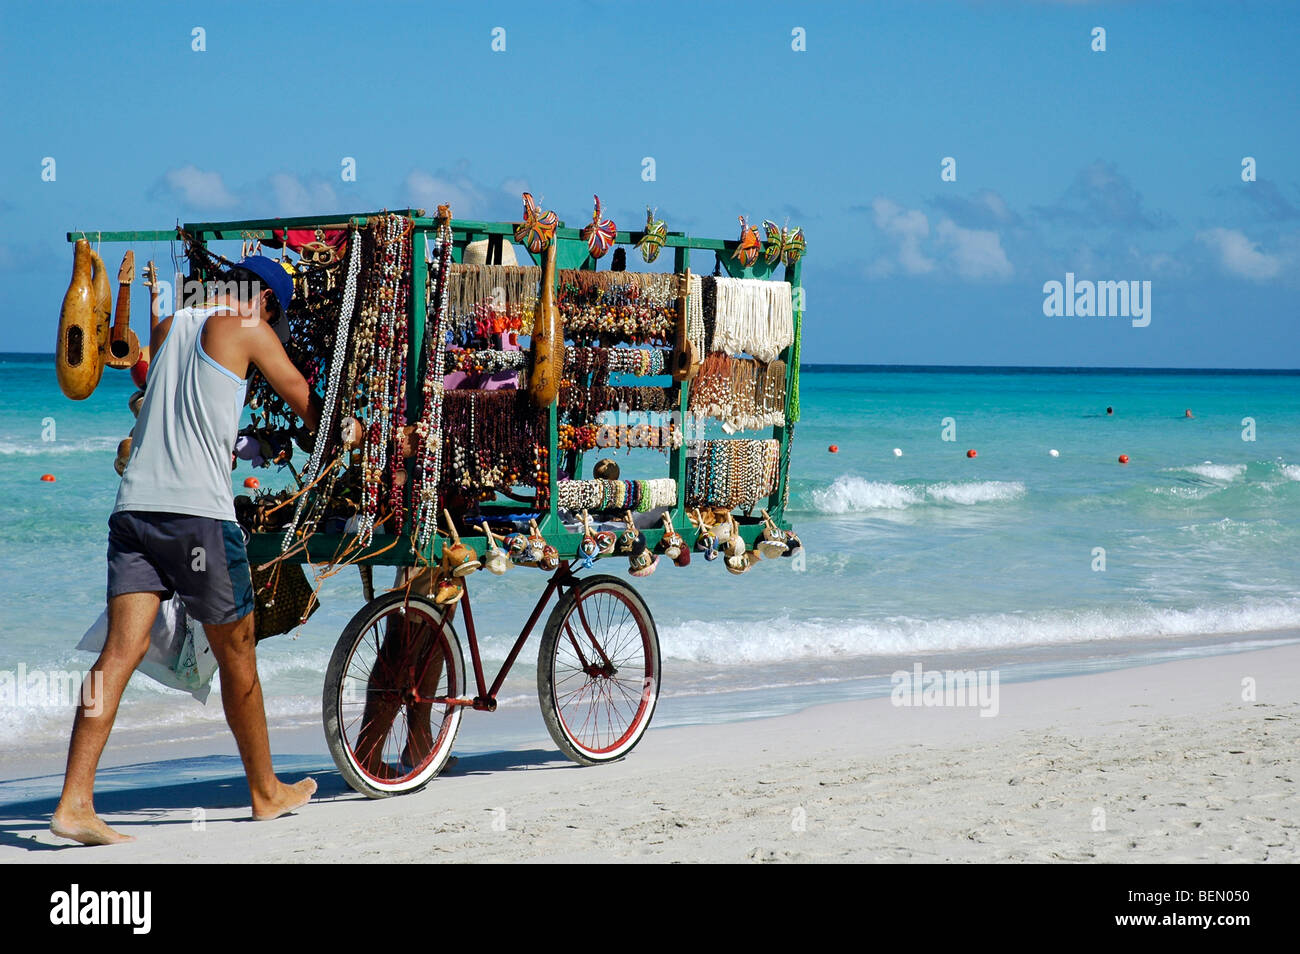 A beach vendor in Varadero, Cuba. Stock Photo